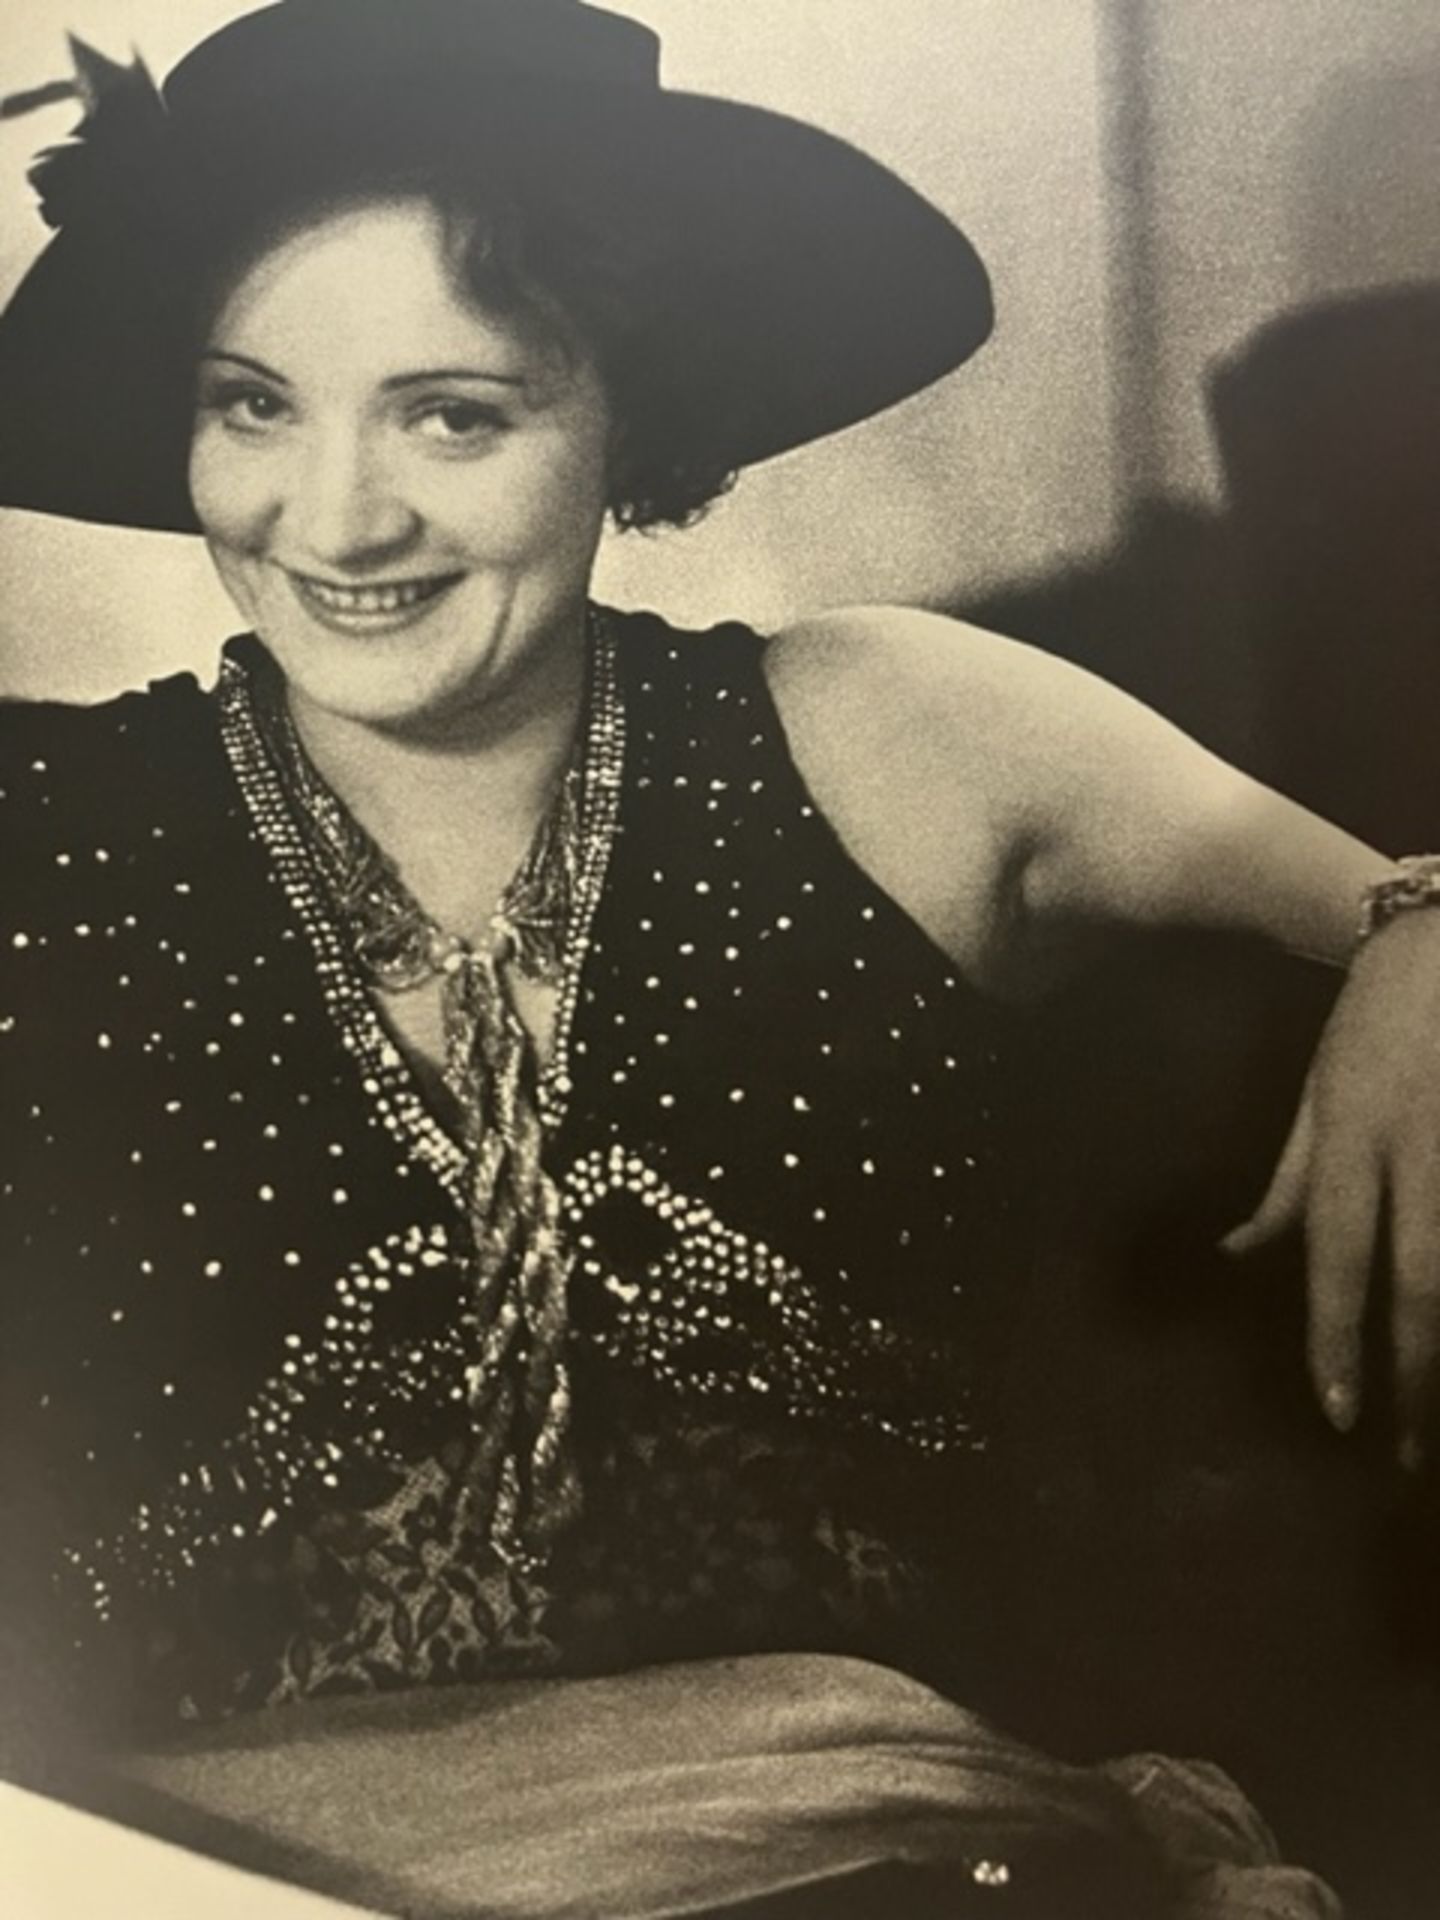 Alfred Eisenstaedt "Marlene Dietrich" Print. - Image 6 of 6